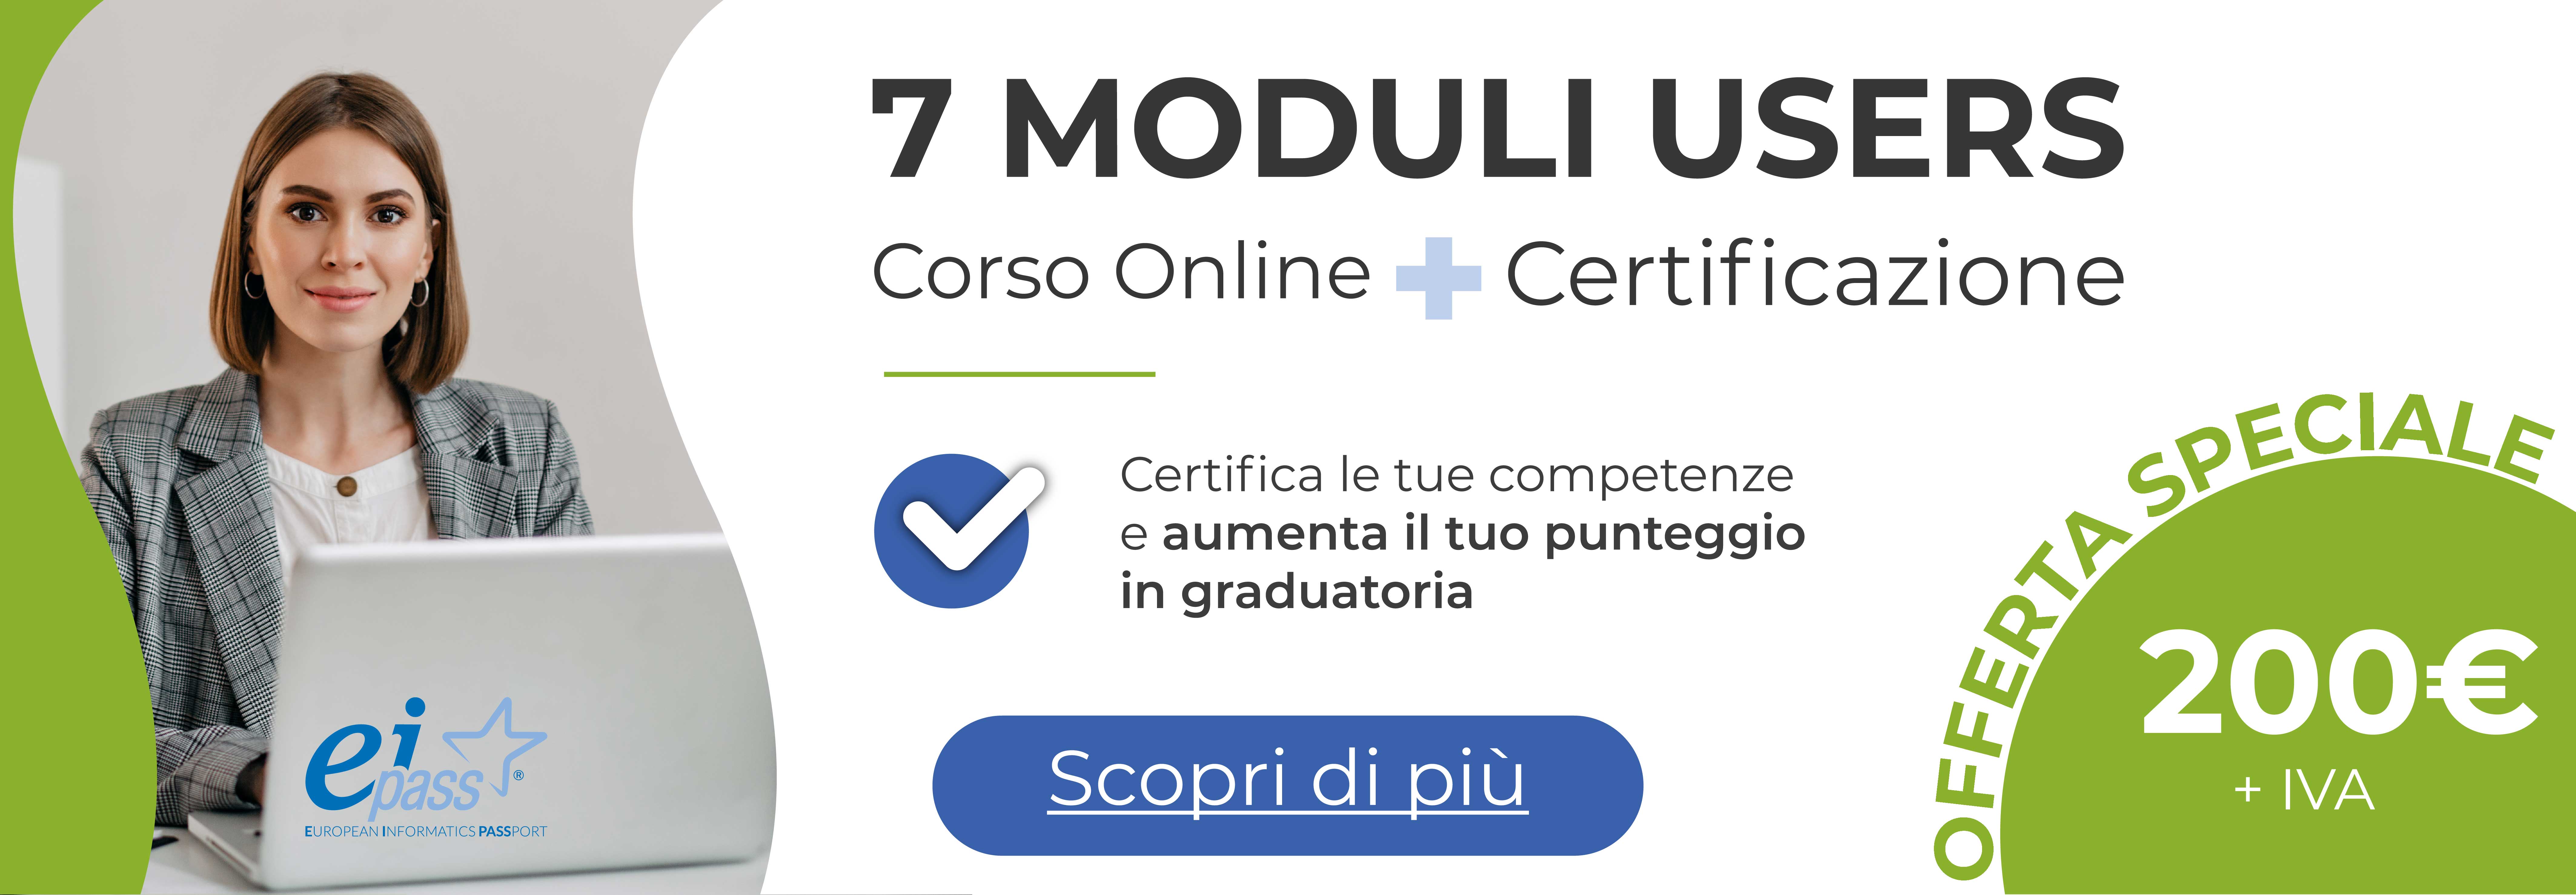 EIPASS 7 Moduli Users - Corso online + Certificazione